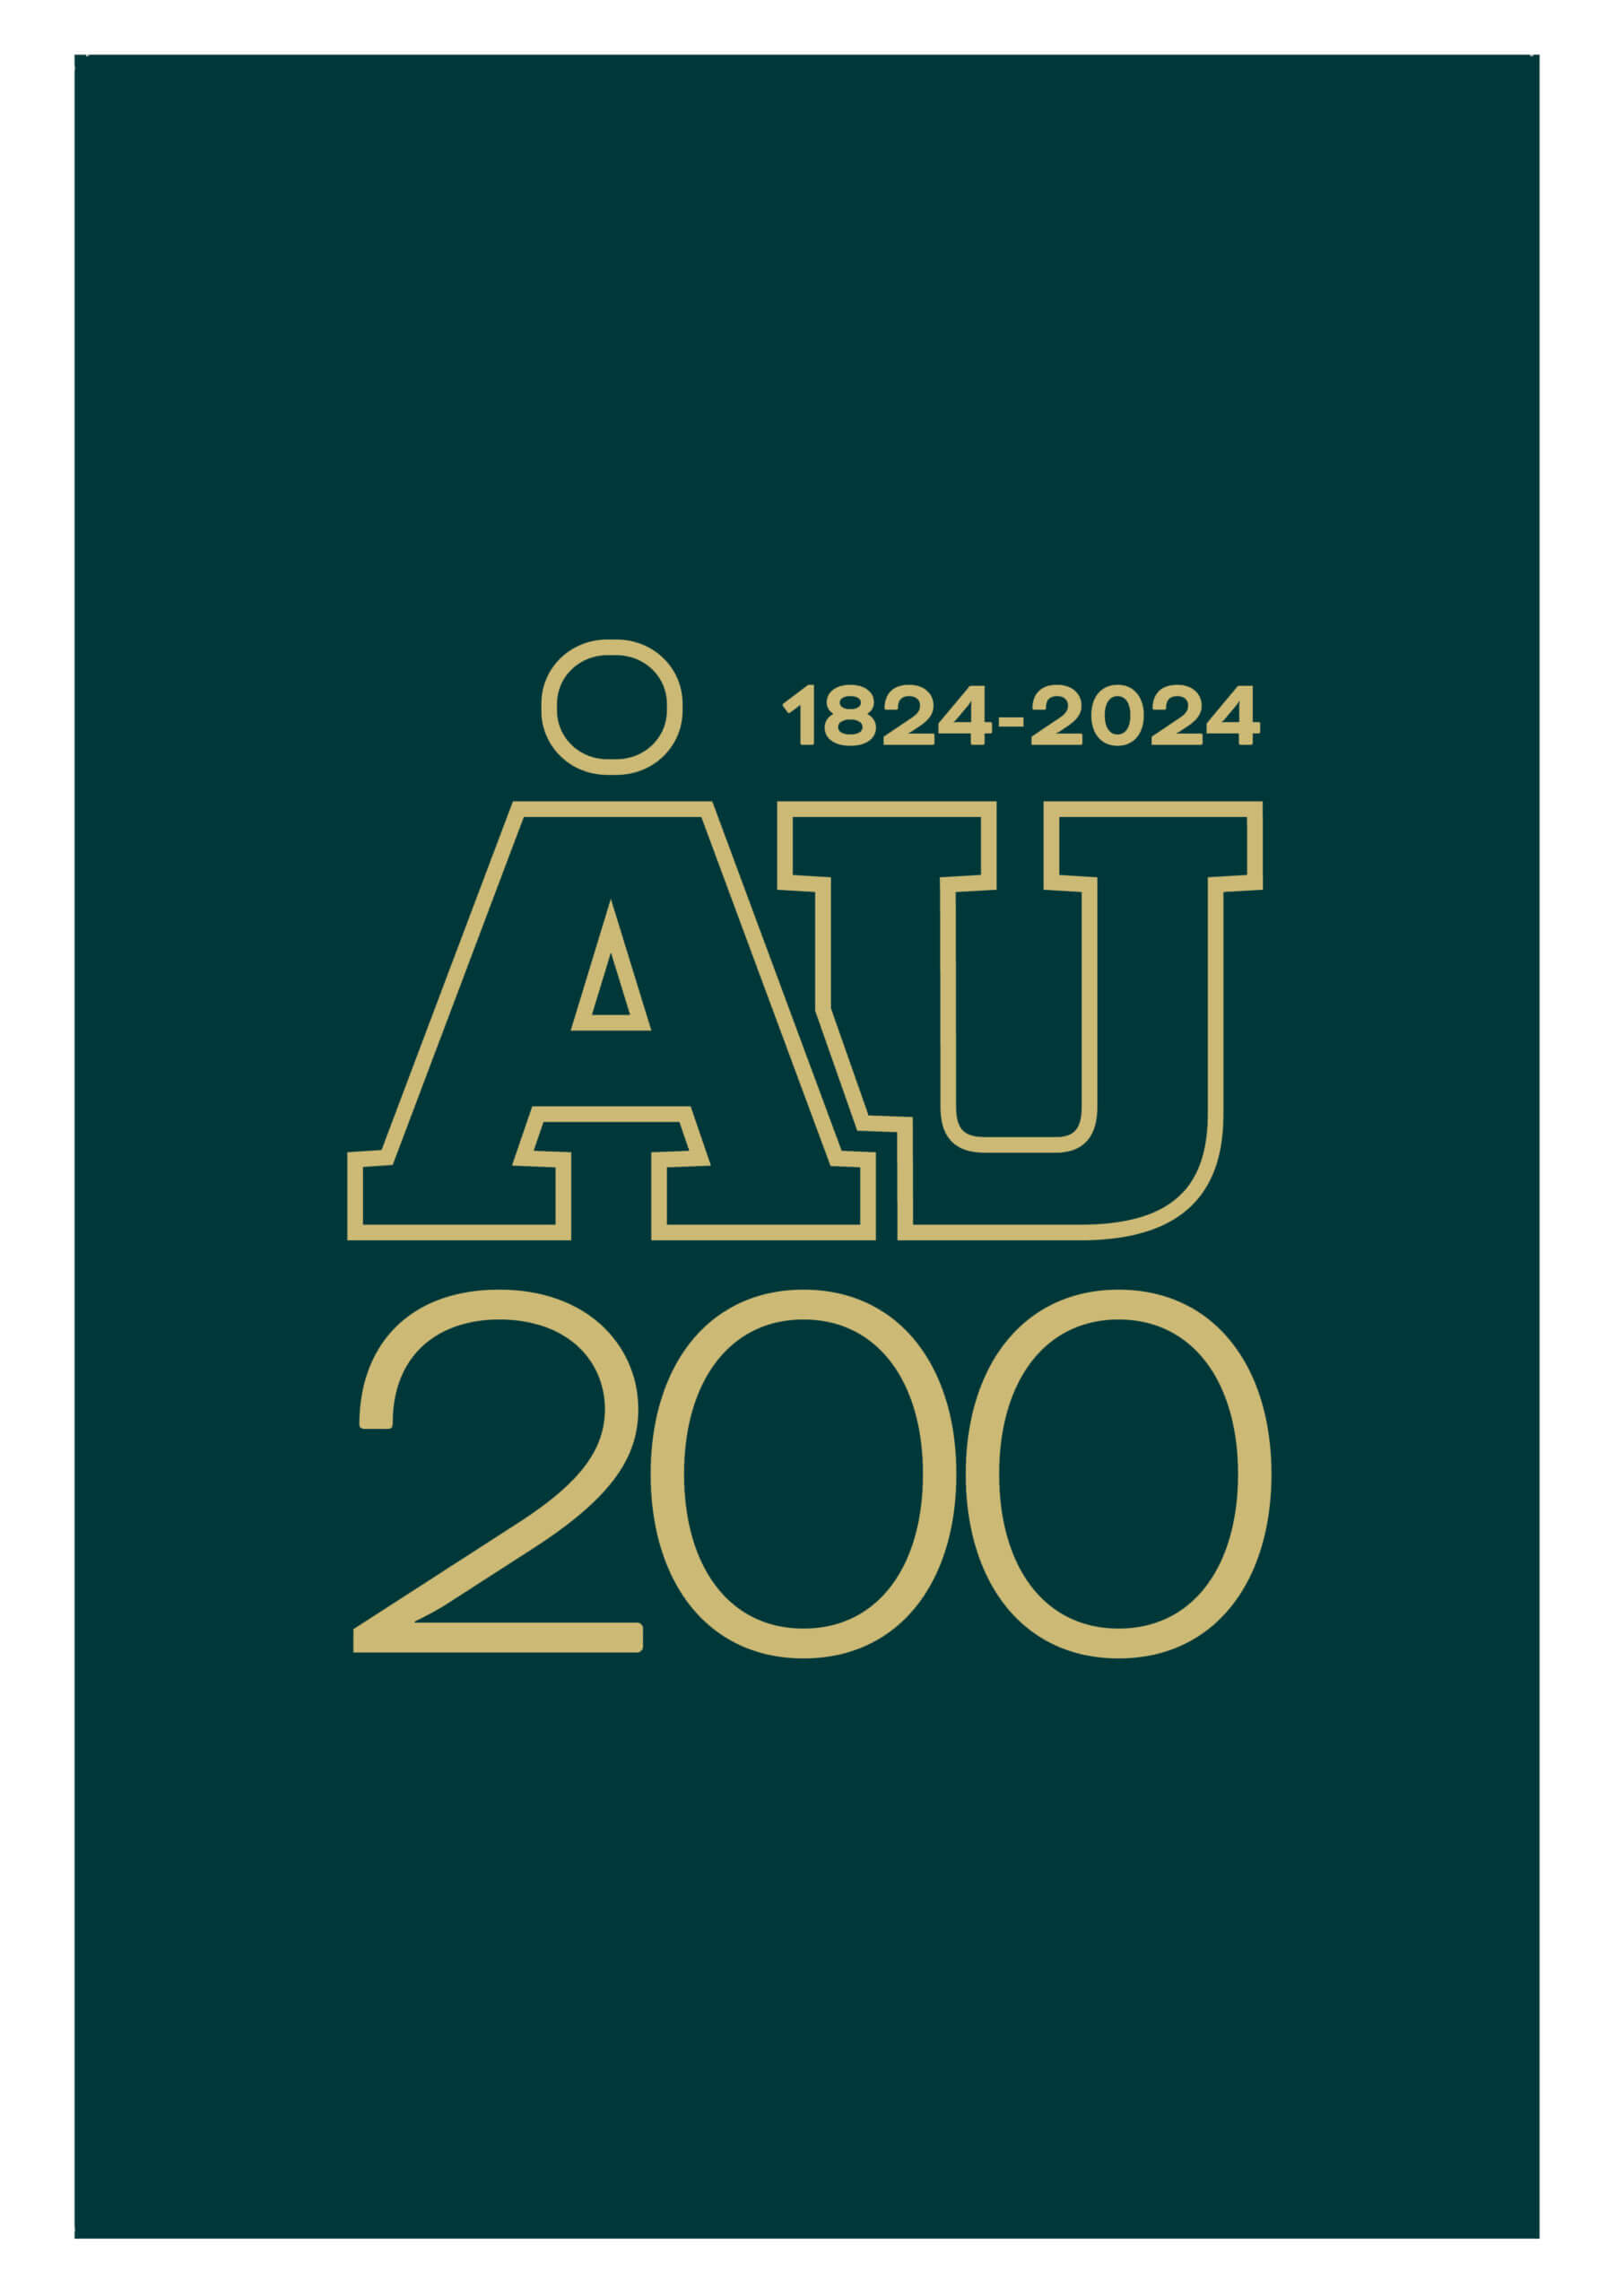 AU 200